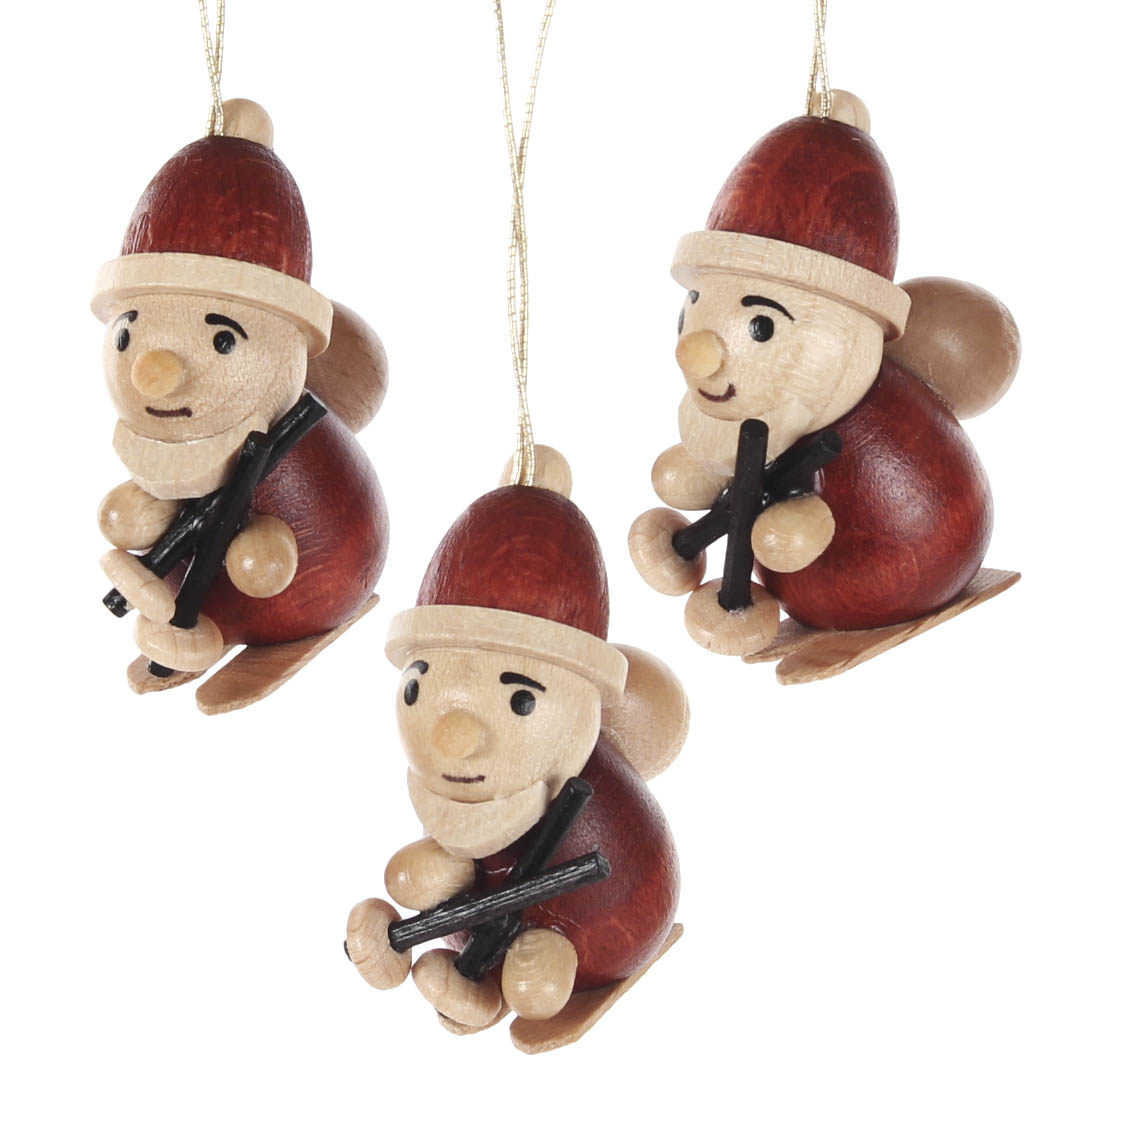 Behang Weihnachtsmann (3) im Dregeno Online Shop günstig kaufen